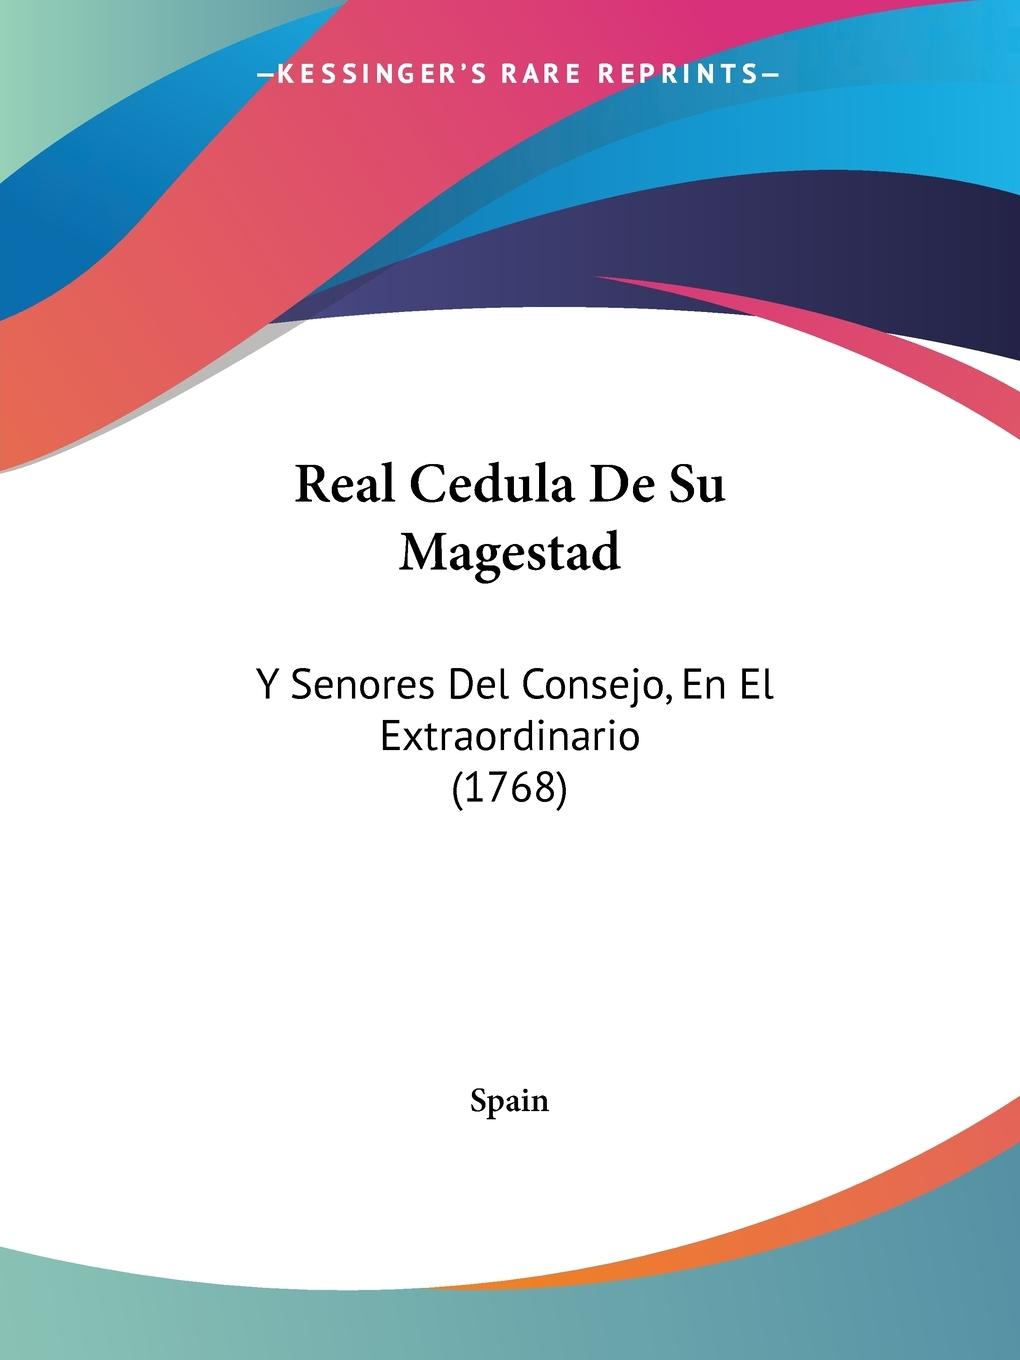 Real Cedula De Su Magestad - Spain